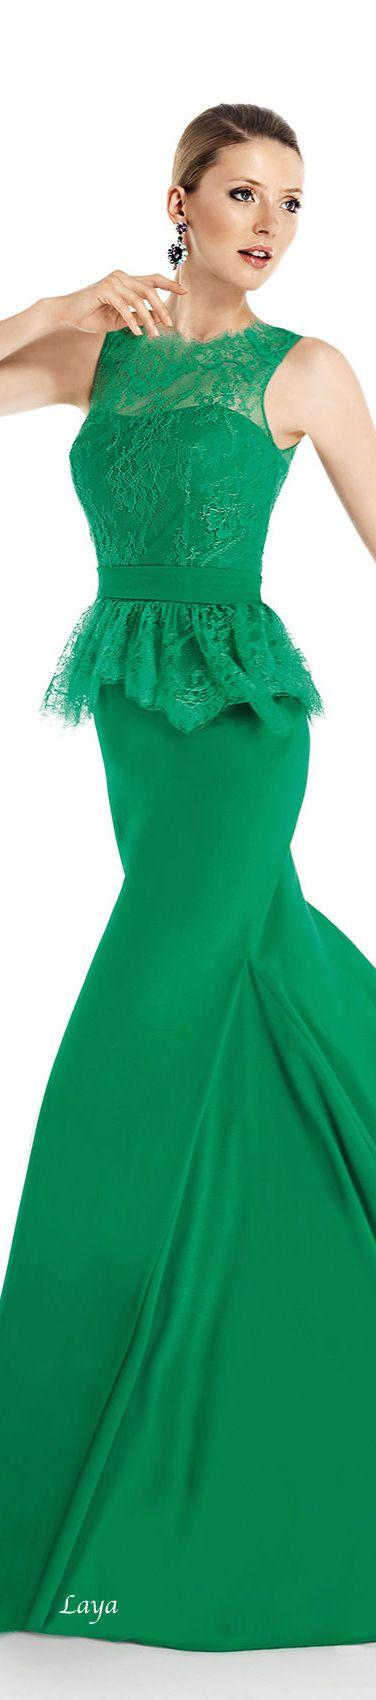 زفاف - Gowns.....Gorgeous Greens